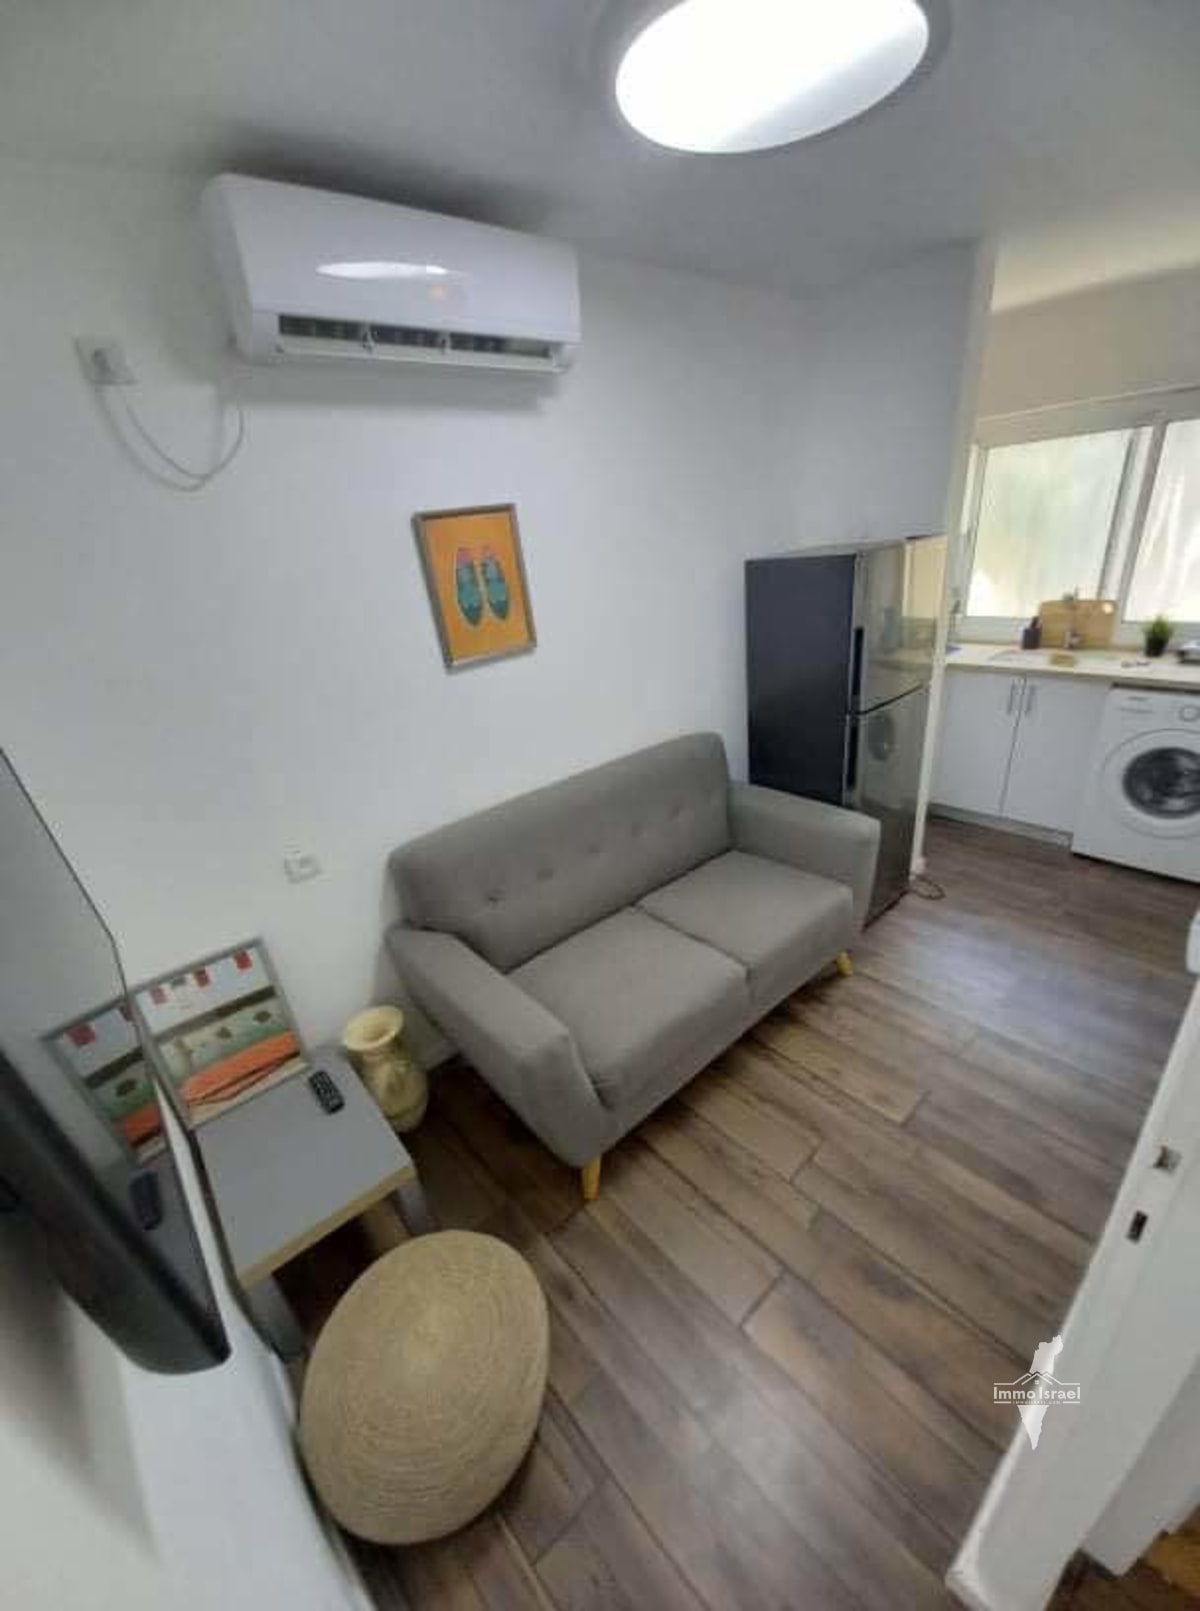 3-Room Apartment for Investment in Gimel Neighborhood, Be'er Sheva